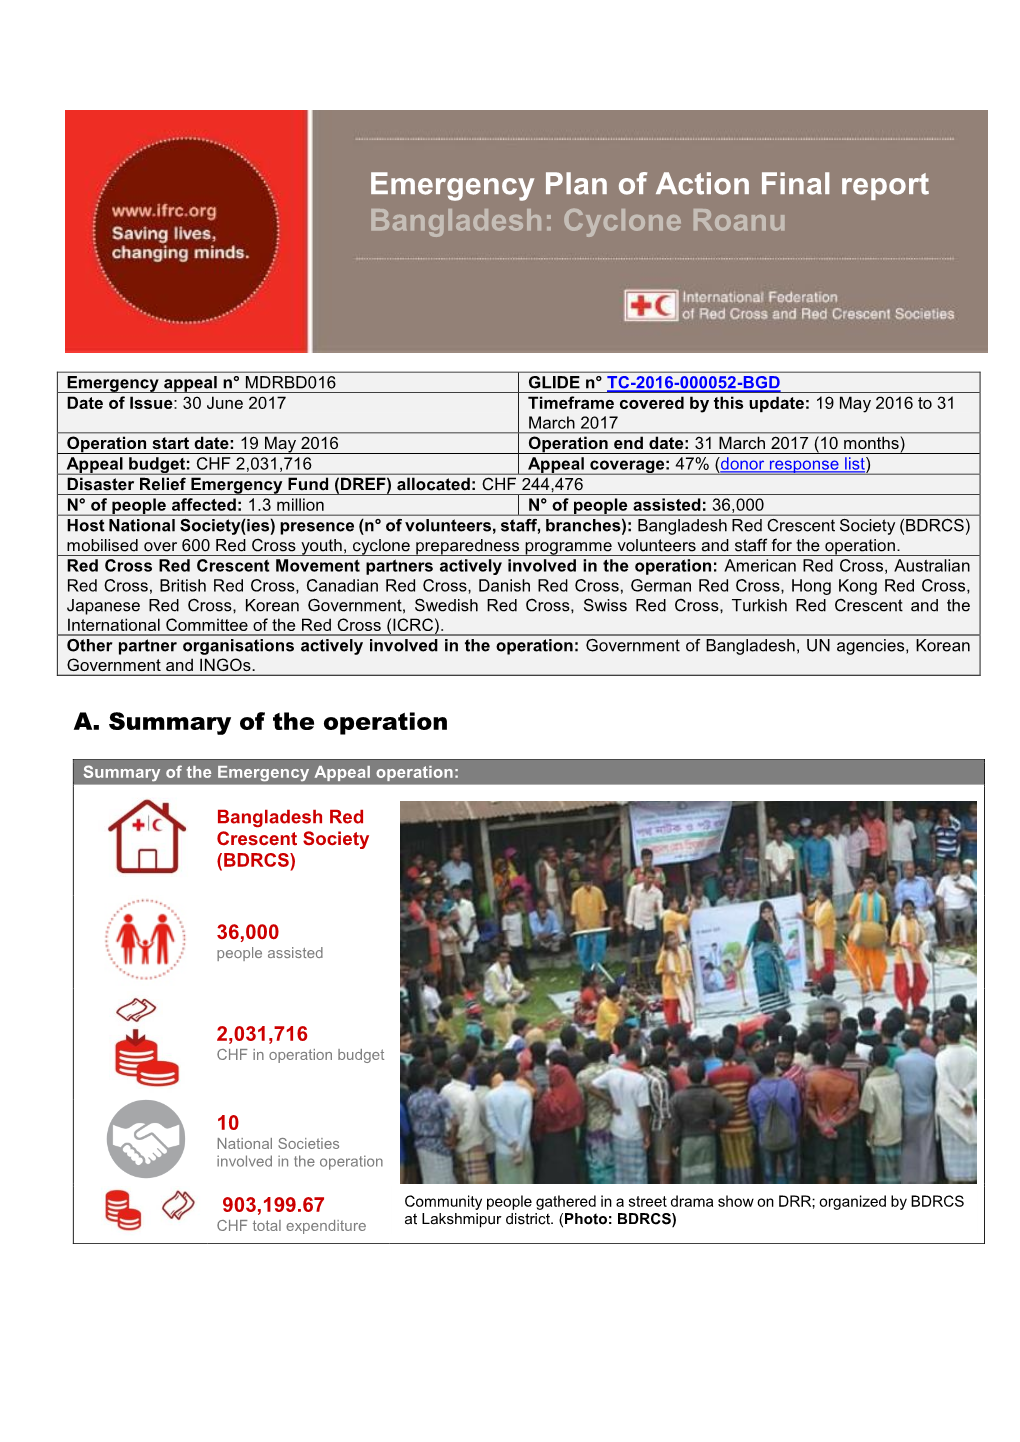 Emergency Plan of Action Final Report Bangladesh: Cyclone Roanu